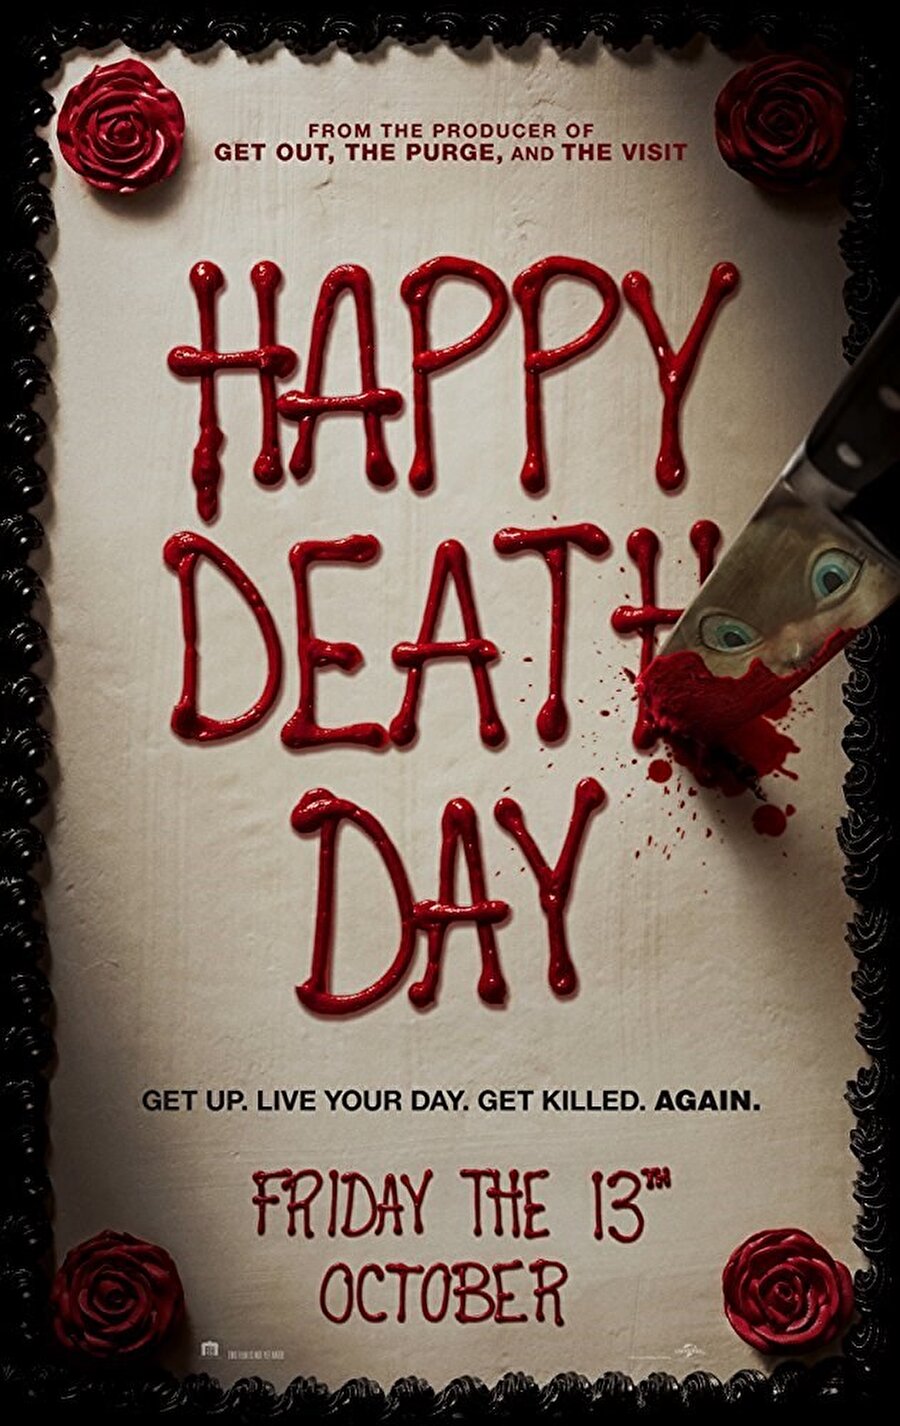 Filmi takip eden yapımlar ise Ölüm Günün Kutlu Olsun ve Bir Nefes Yeter filmleri takip etti.
